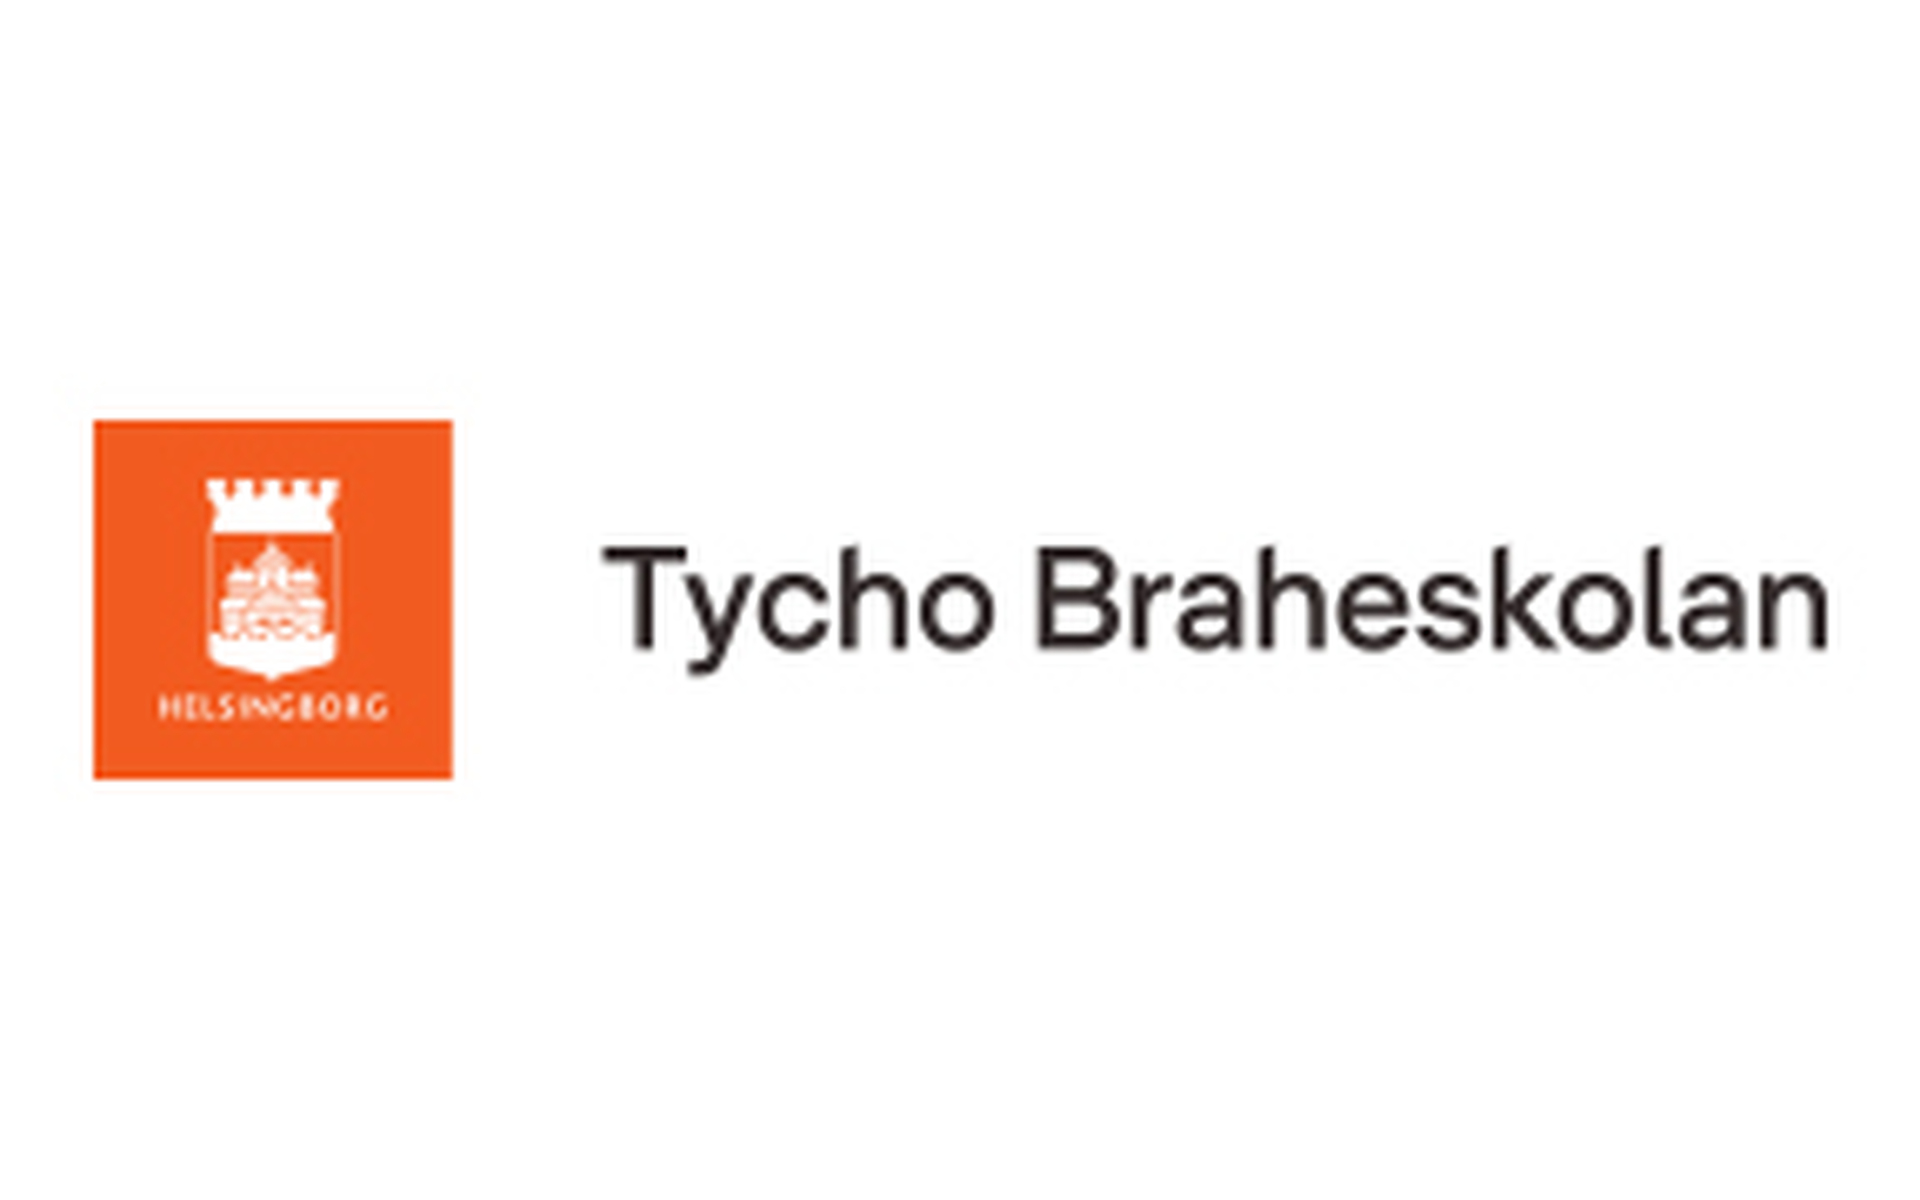 Tycho Braheskolan